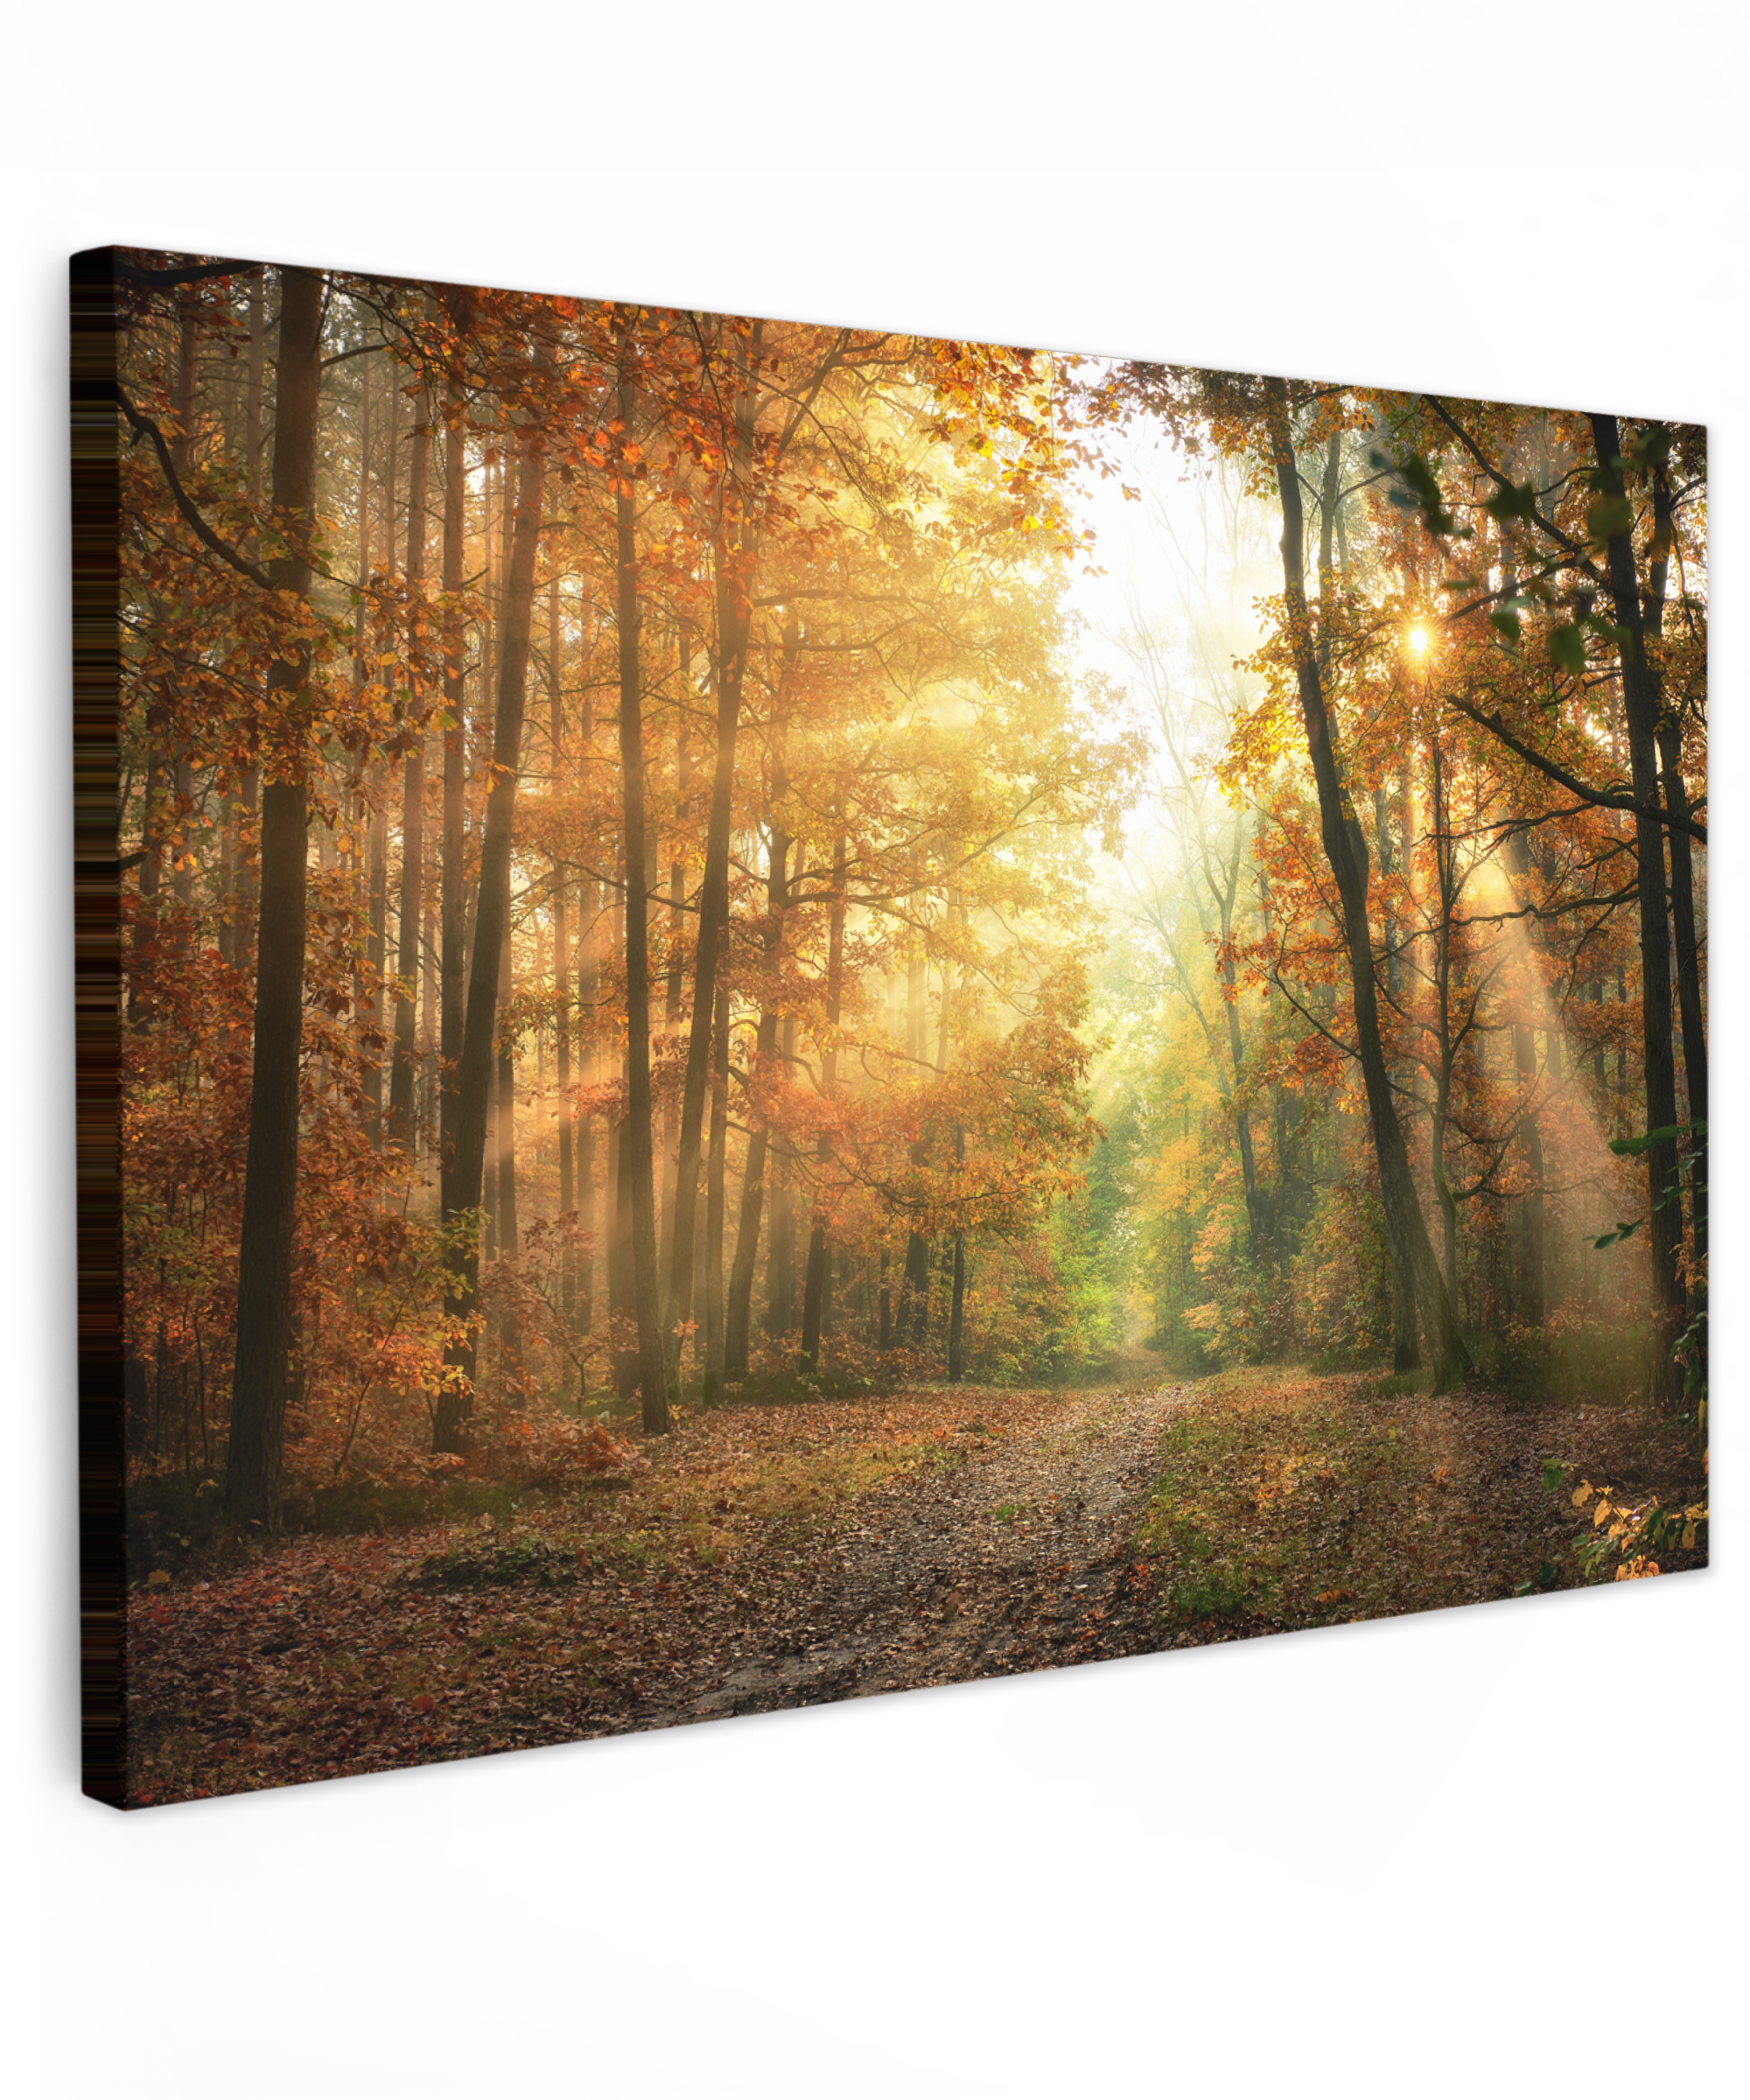 Leinwandbild - Wald - Herbst - Sonne - Landschaft - Natur - Bäume - Blätter